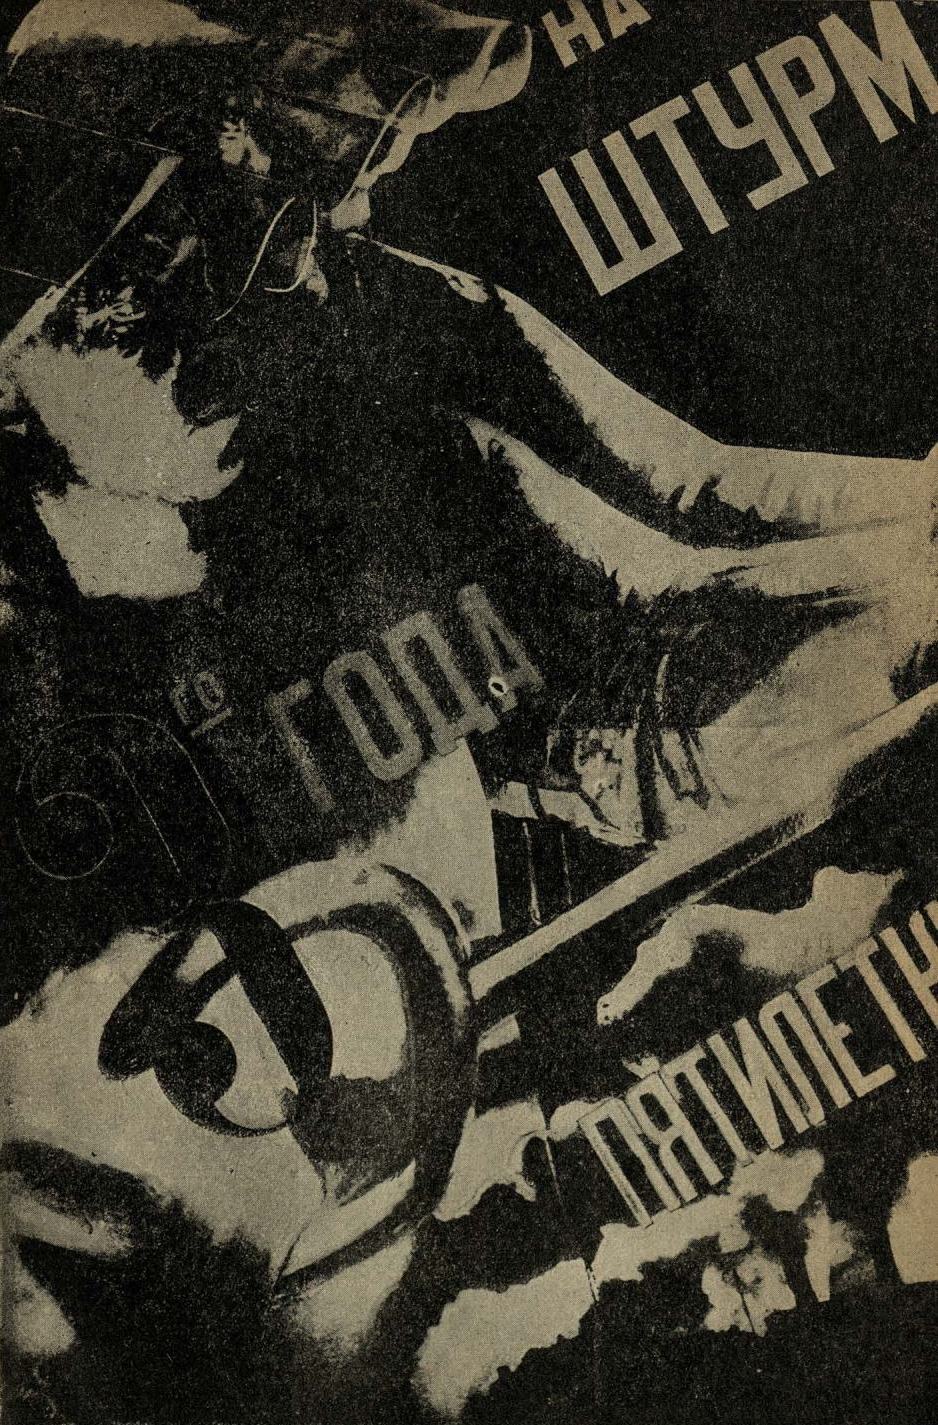 Плакат к XIII годовщине Октябрьской революции. Бригада ударников-литейщиков, на штурм 3-го года пятилетки, 1930 г. Худ. Клуцис